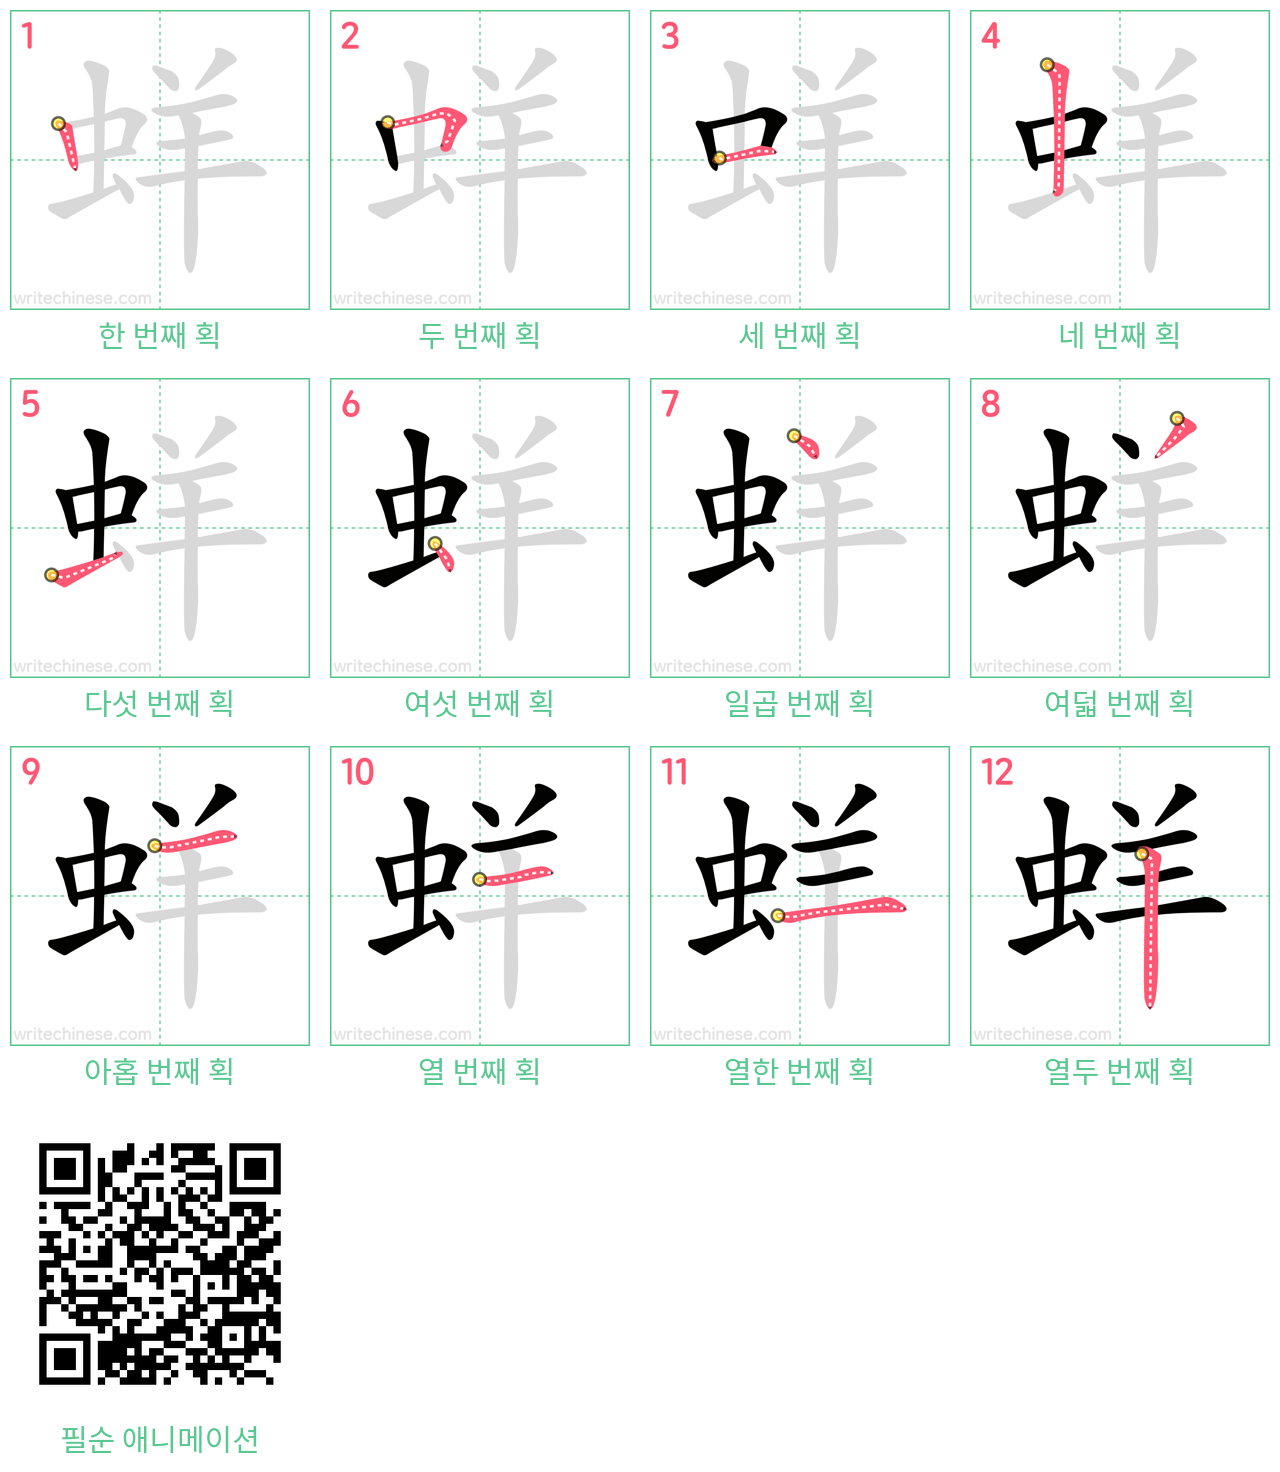 蛘 step-by-step stroke order diagrams